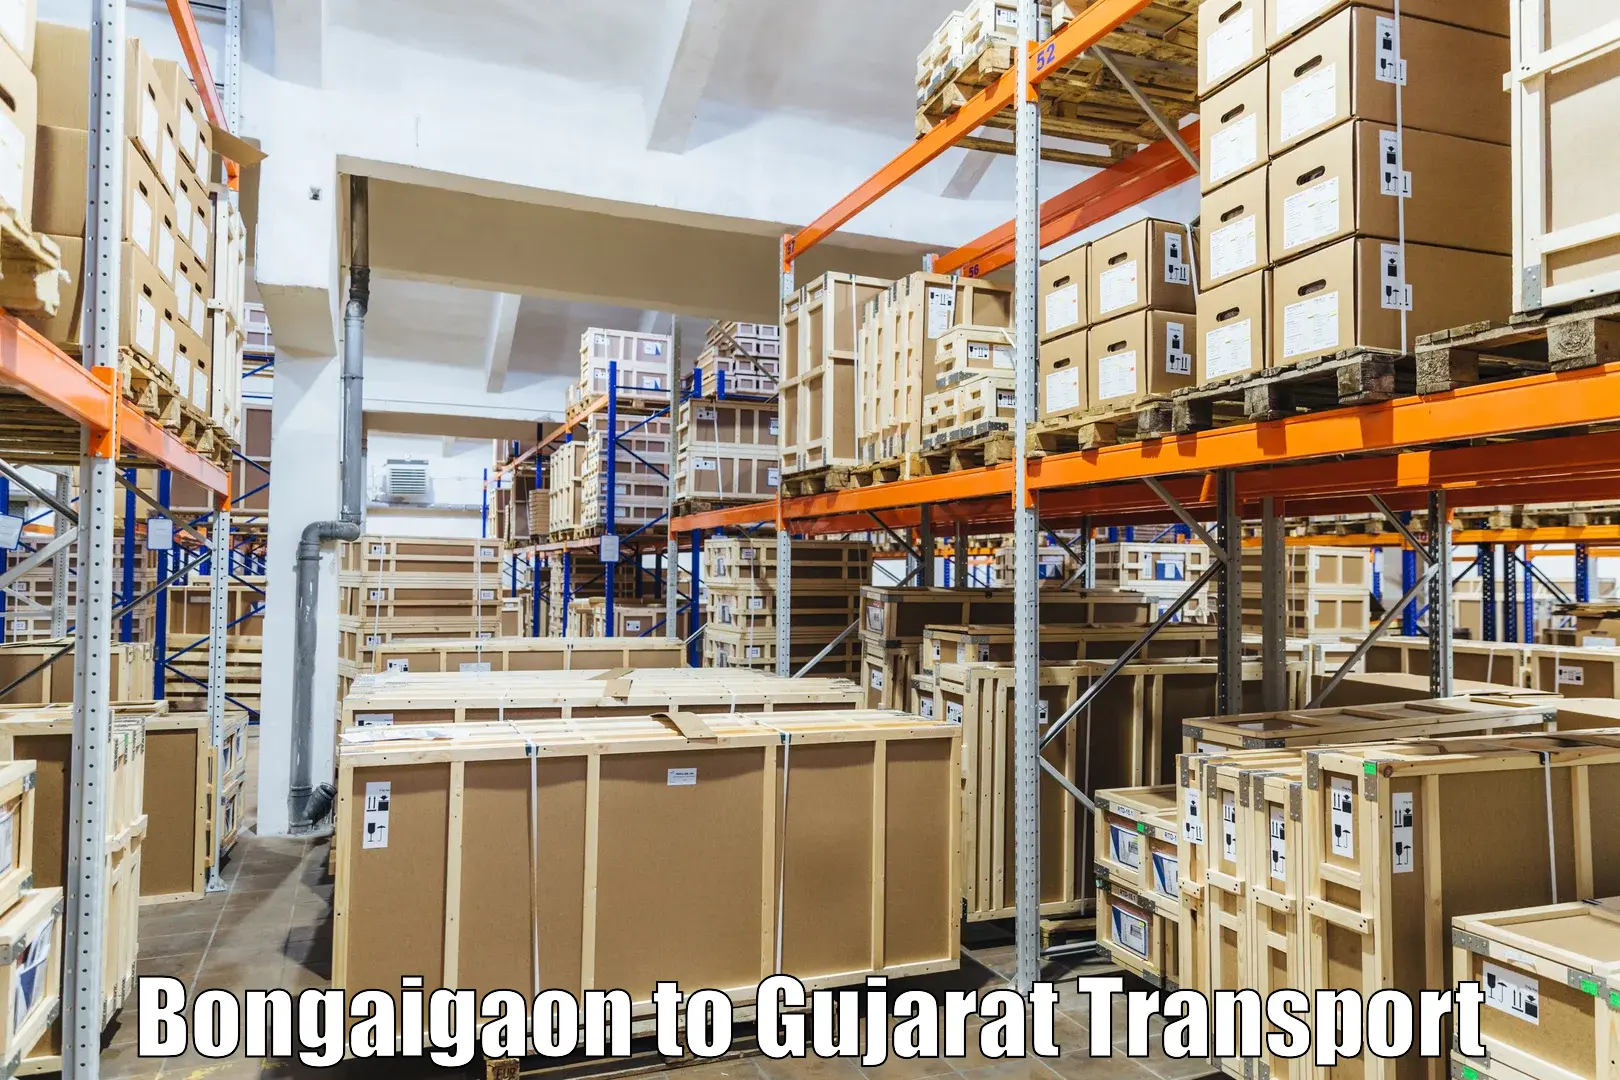 Intercity transport Bongaigaon to IIIT Surat